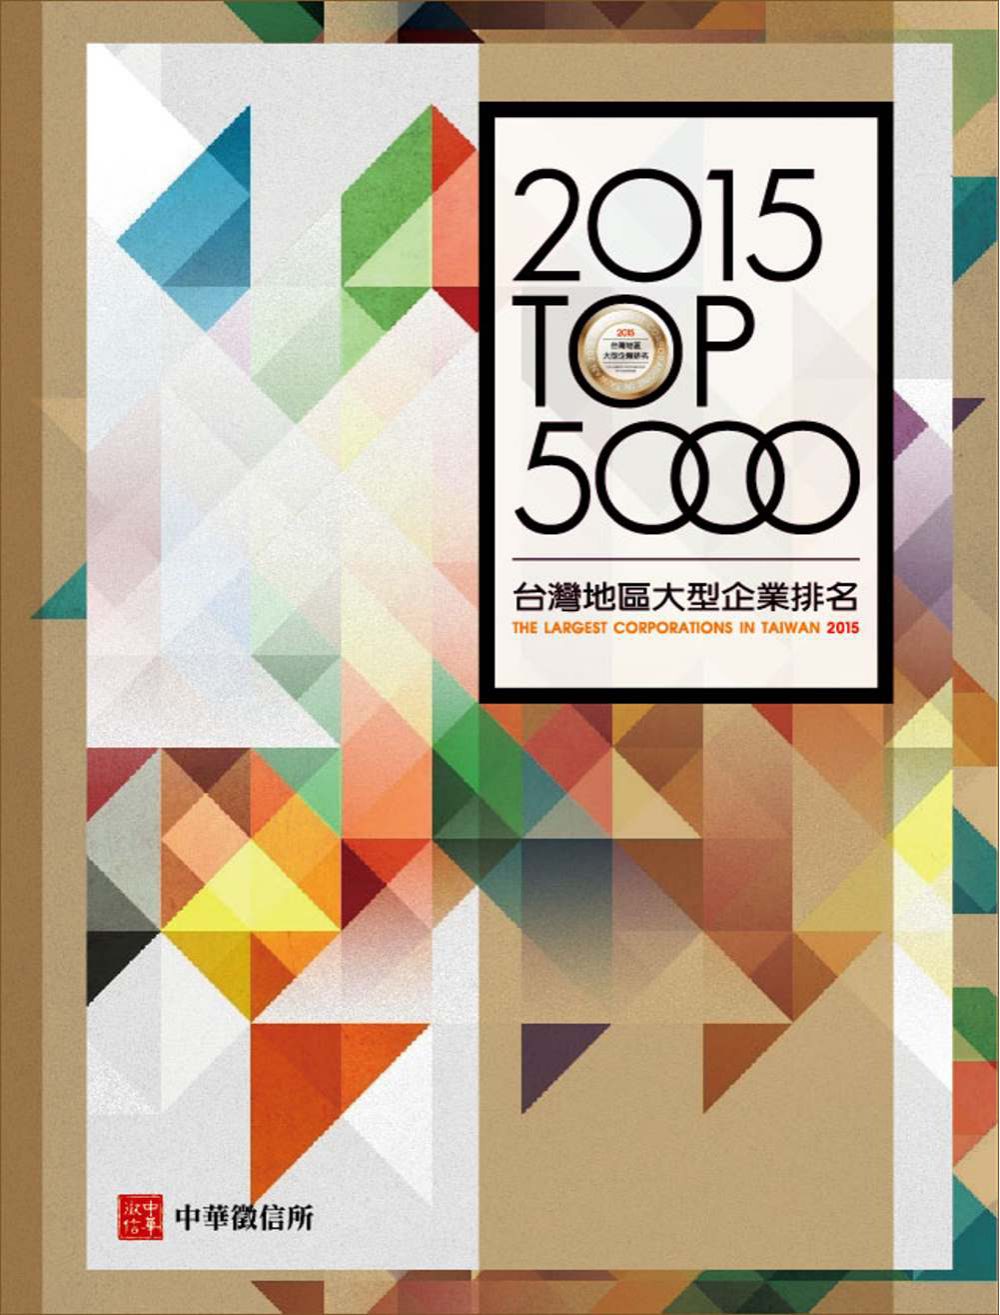 2015年台灣地區大型企業排名TOP5000